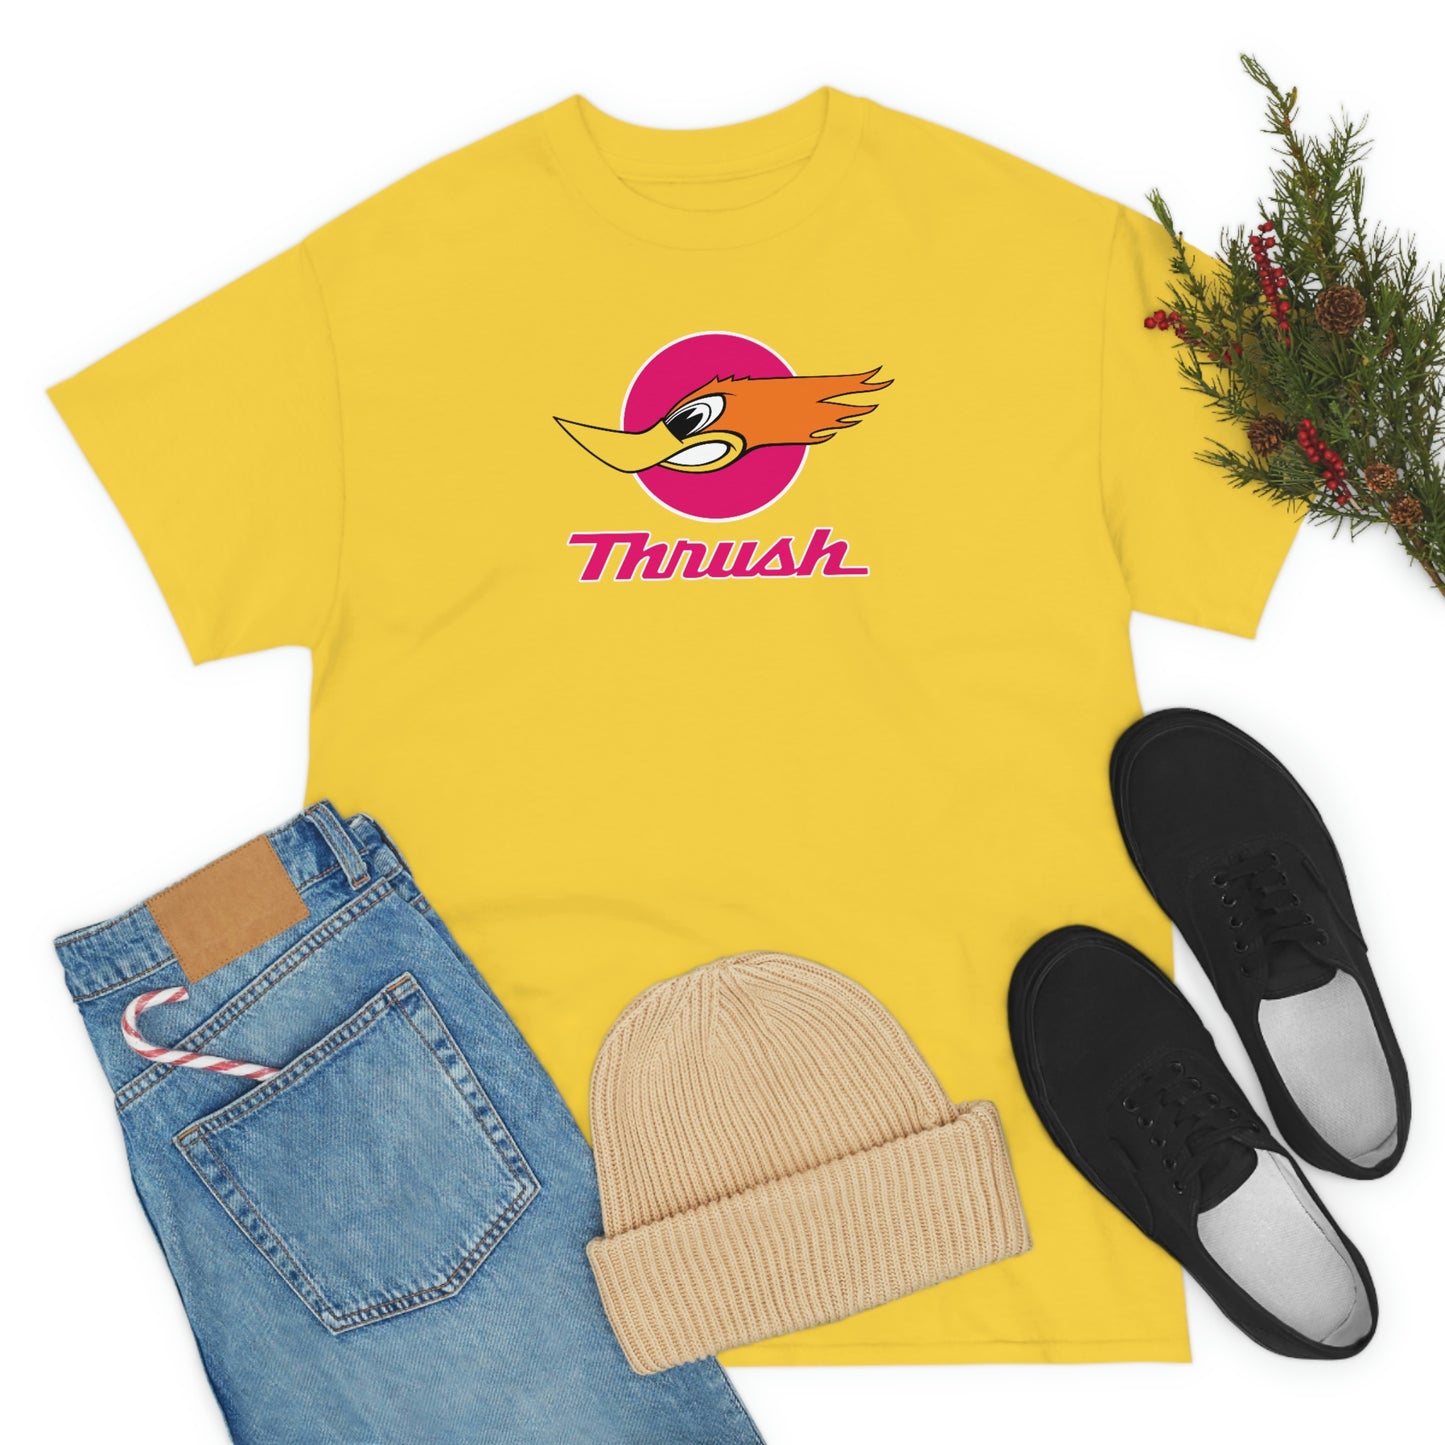 Thrush T-Shirt